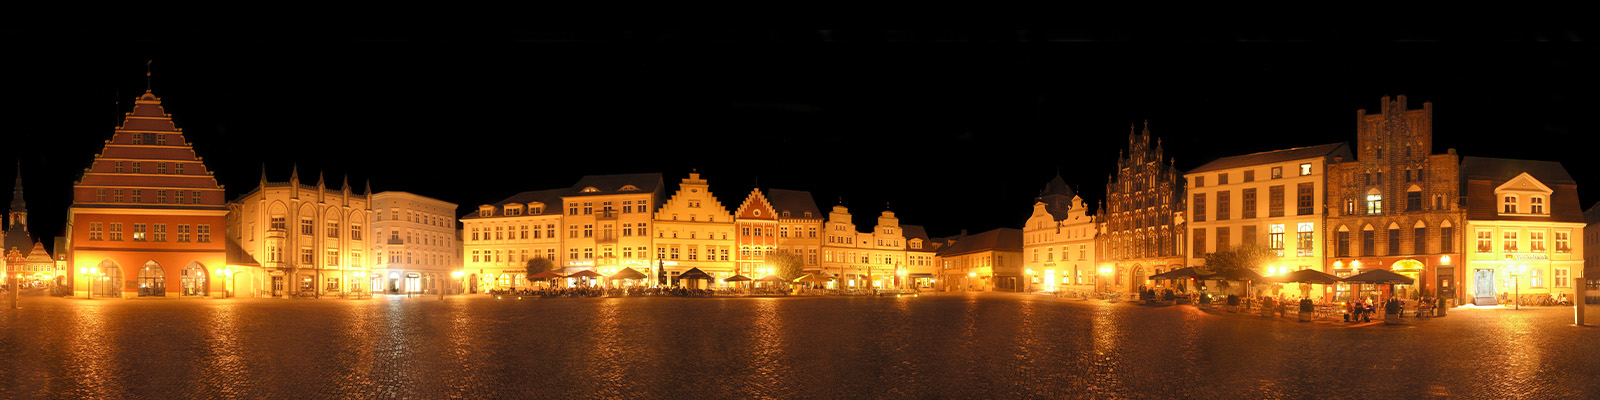 Panorama: Greifswald Markt bei Nacht - Motivnummer:  hgw-alt-01